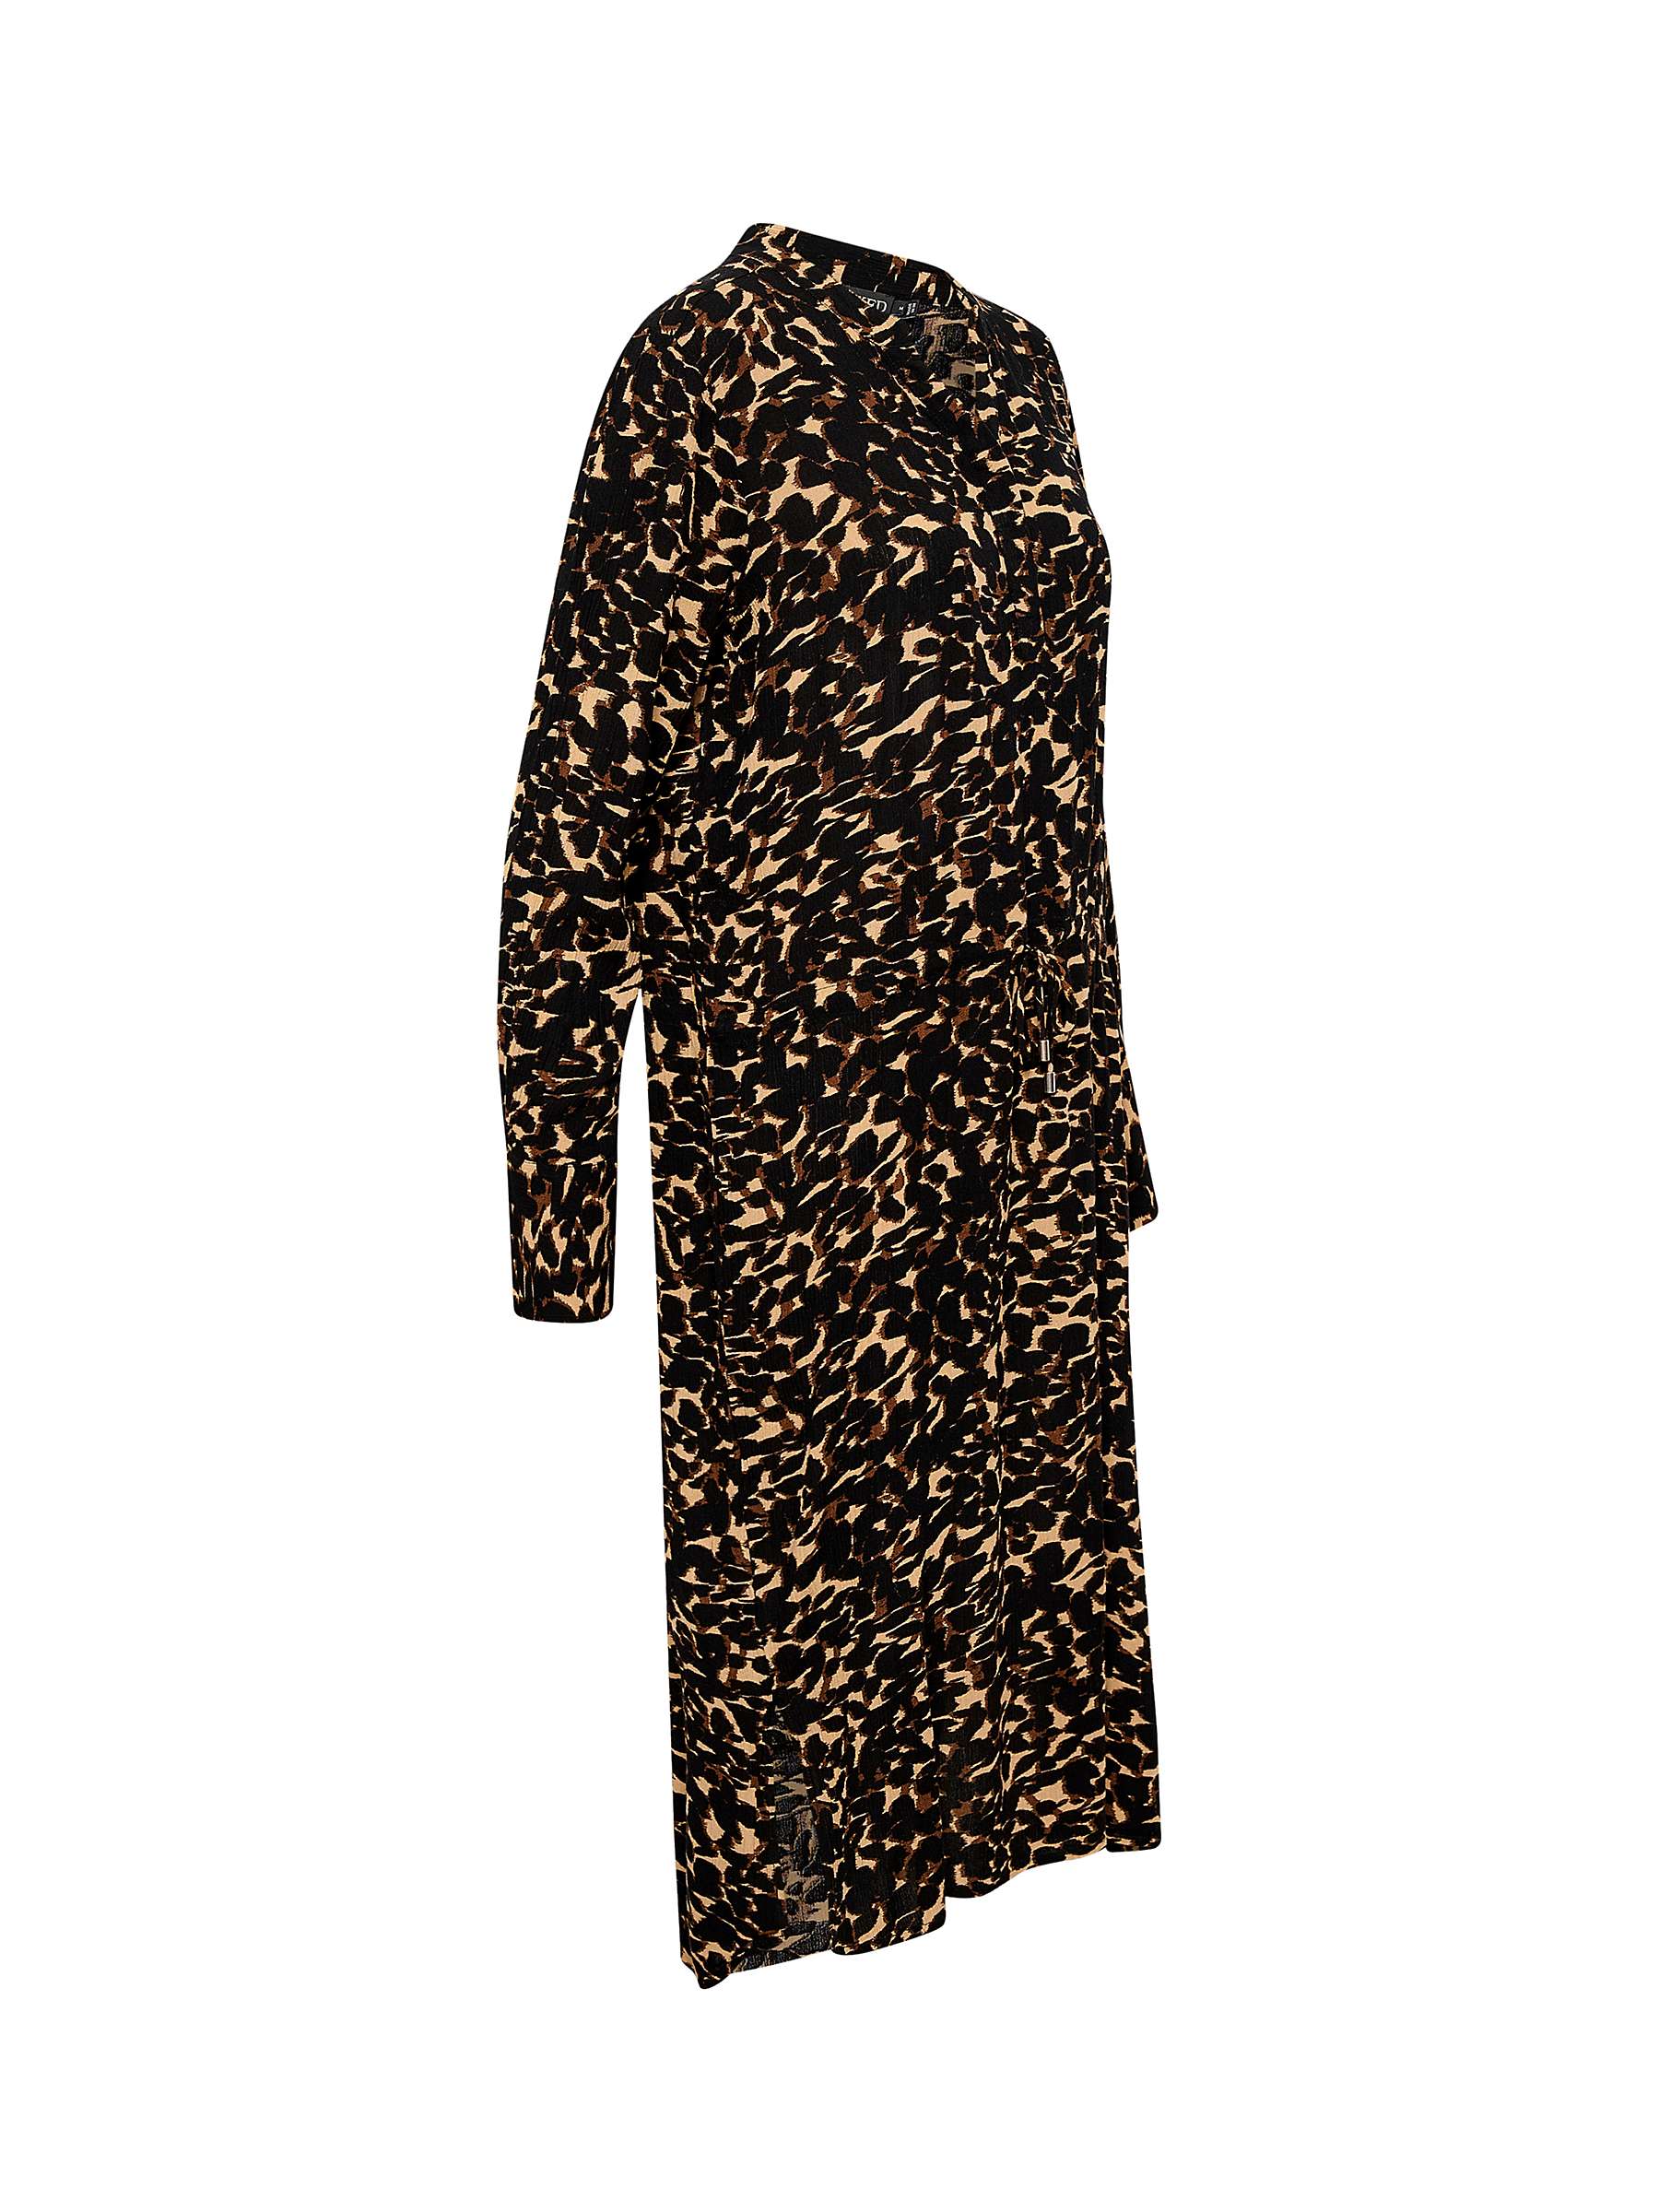 Buy Soaked In Luxury Zaya Printed Dress, Tigers Eye Leaf Online at johnlewis.com